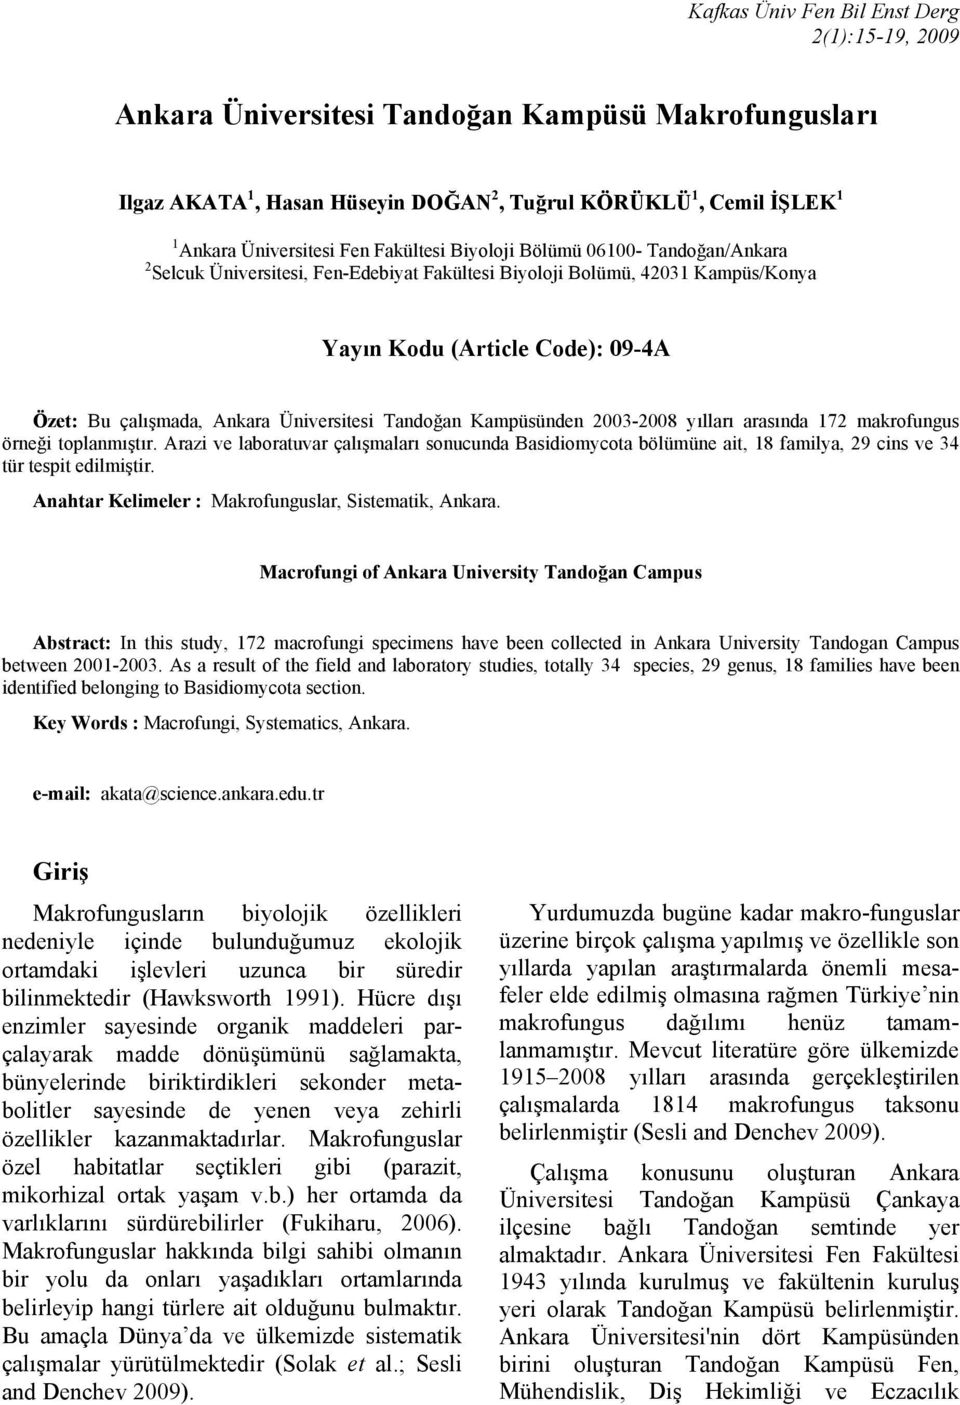 Üniversitesi Tandoğan Kampüsünden 2003-2008 yılları arasında 172 makrofungus örneği toplanmıştır.